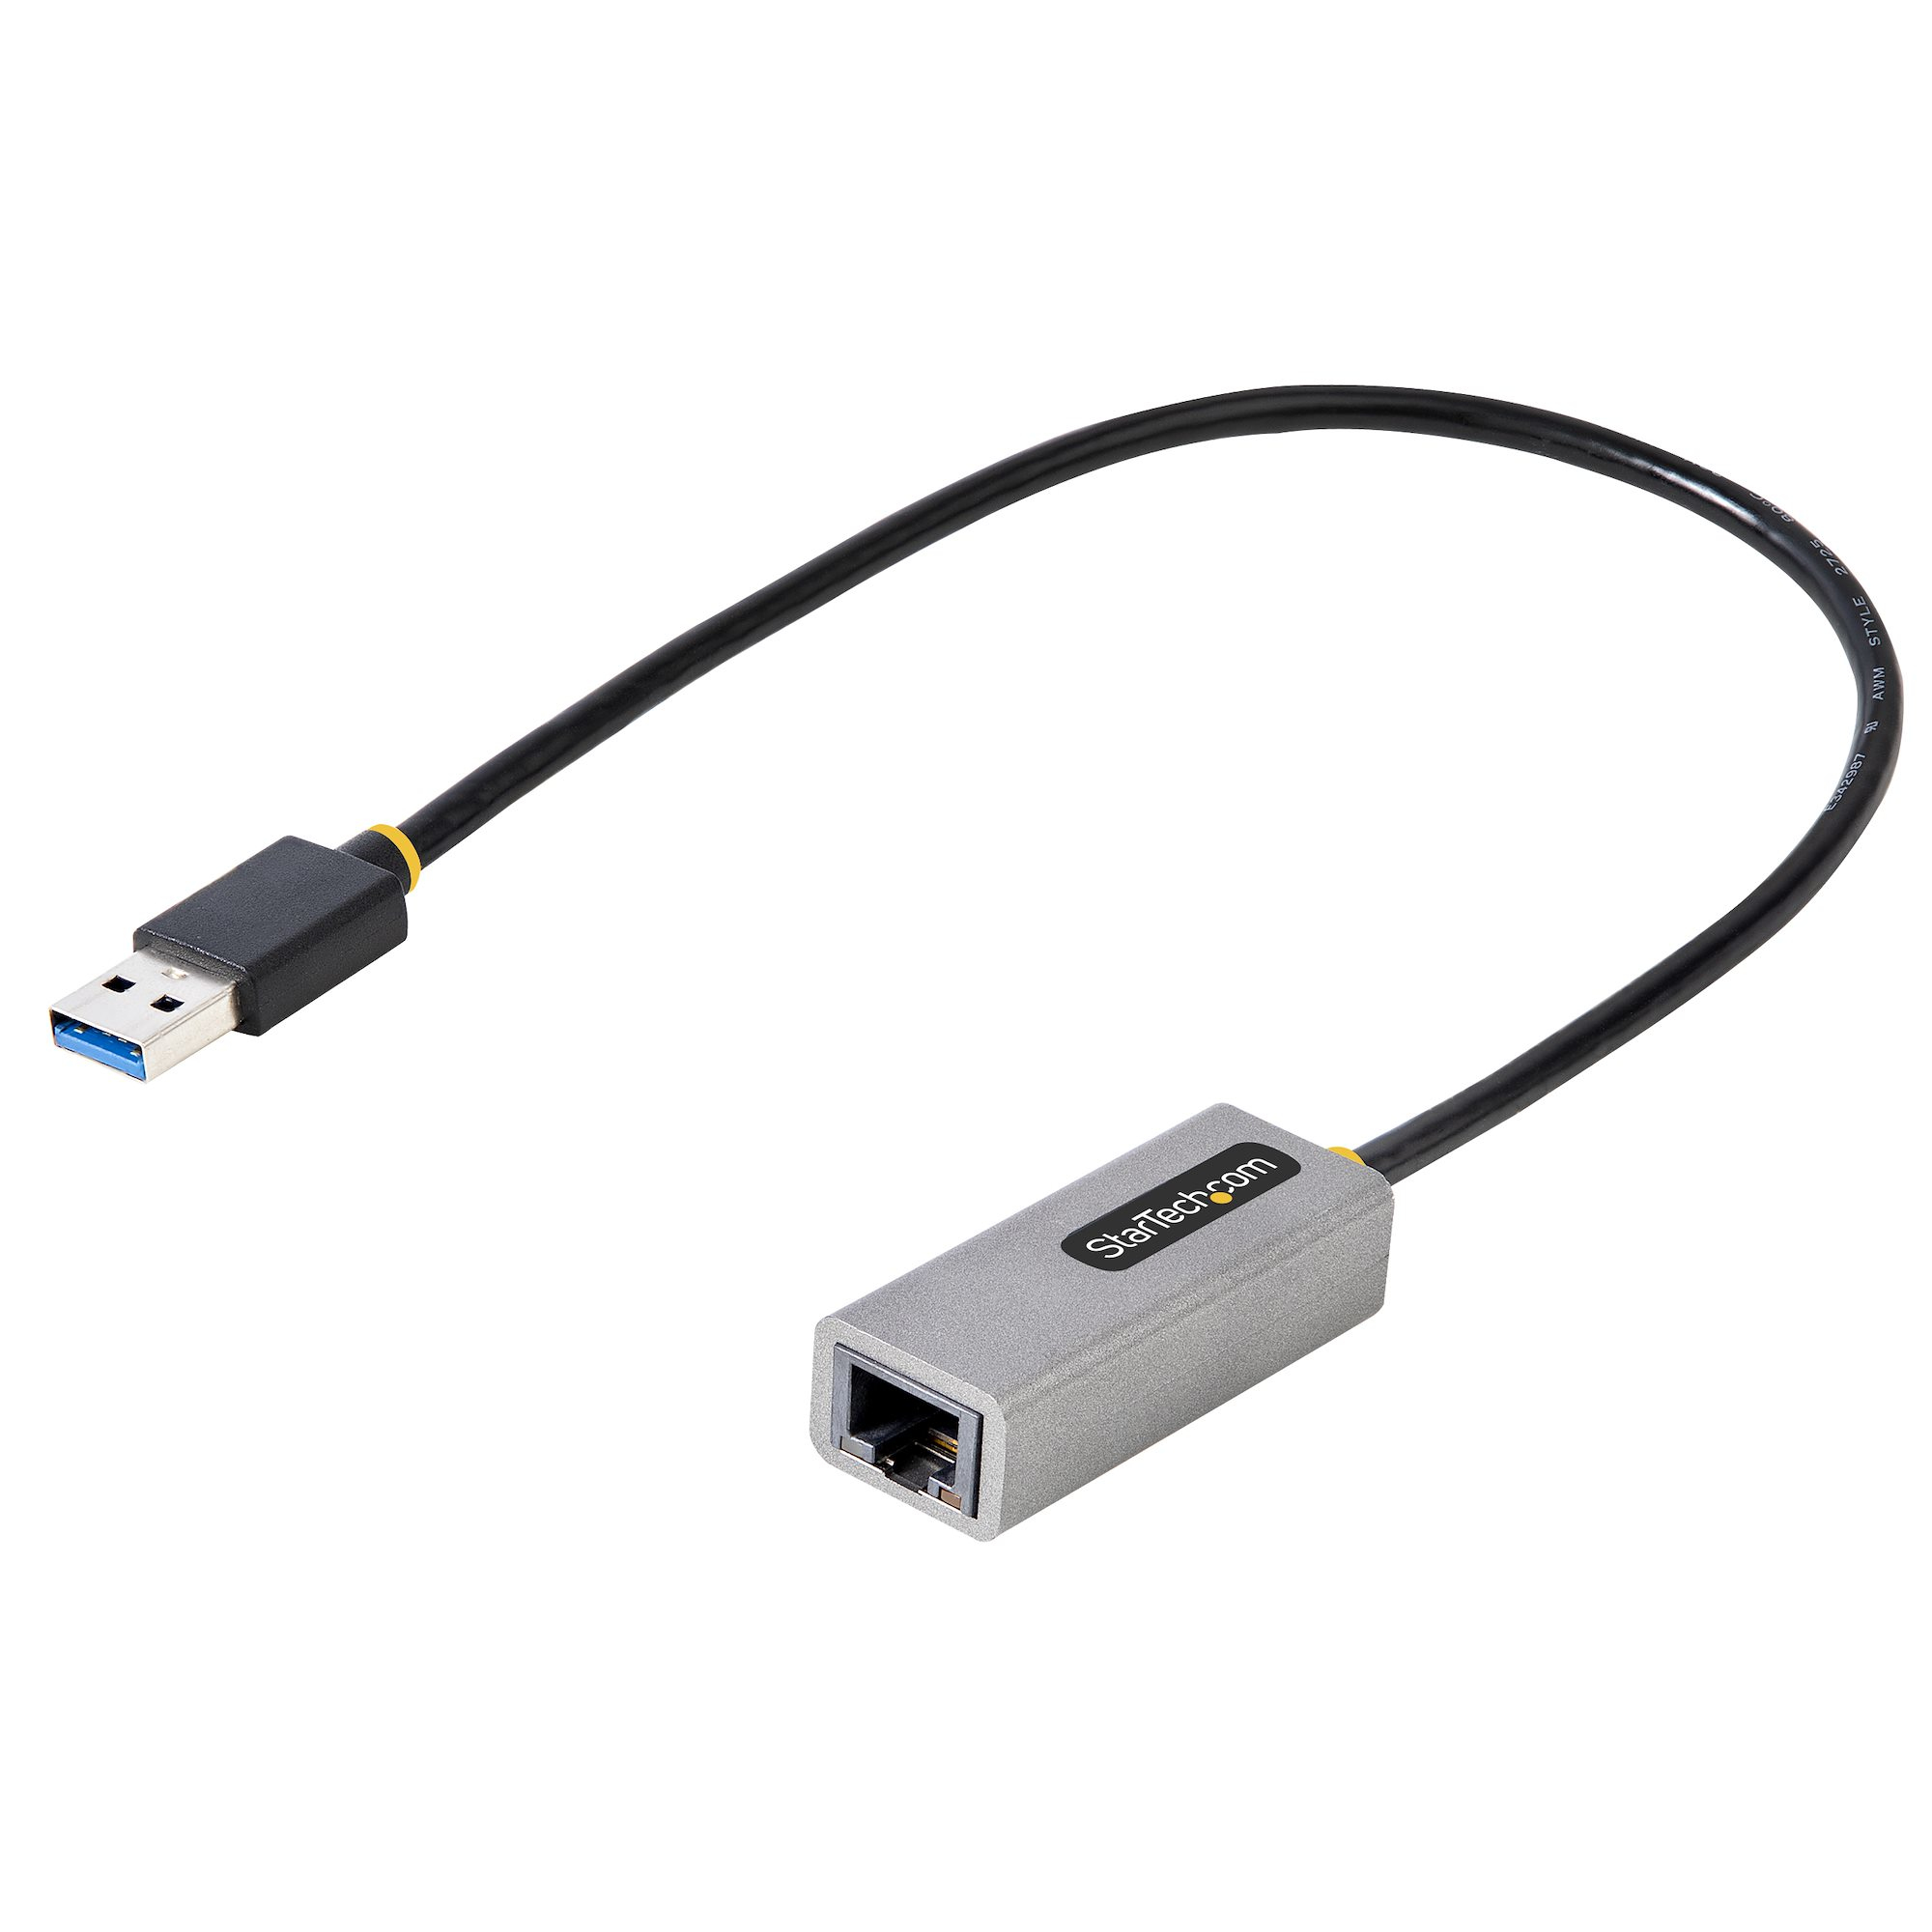 StarTech.com USB 3.0 Gigabit Ethernet Adapter, USB 3.0 zu 10/100/1000 Netzwerkadapter für Laptops, 30cm angeschlossenes Kabel, USB zu RJ45/LAN Adapter, NIC Adapter, Win, MacOS und Chrome  (USB31000S2)